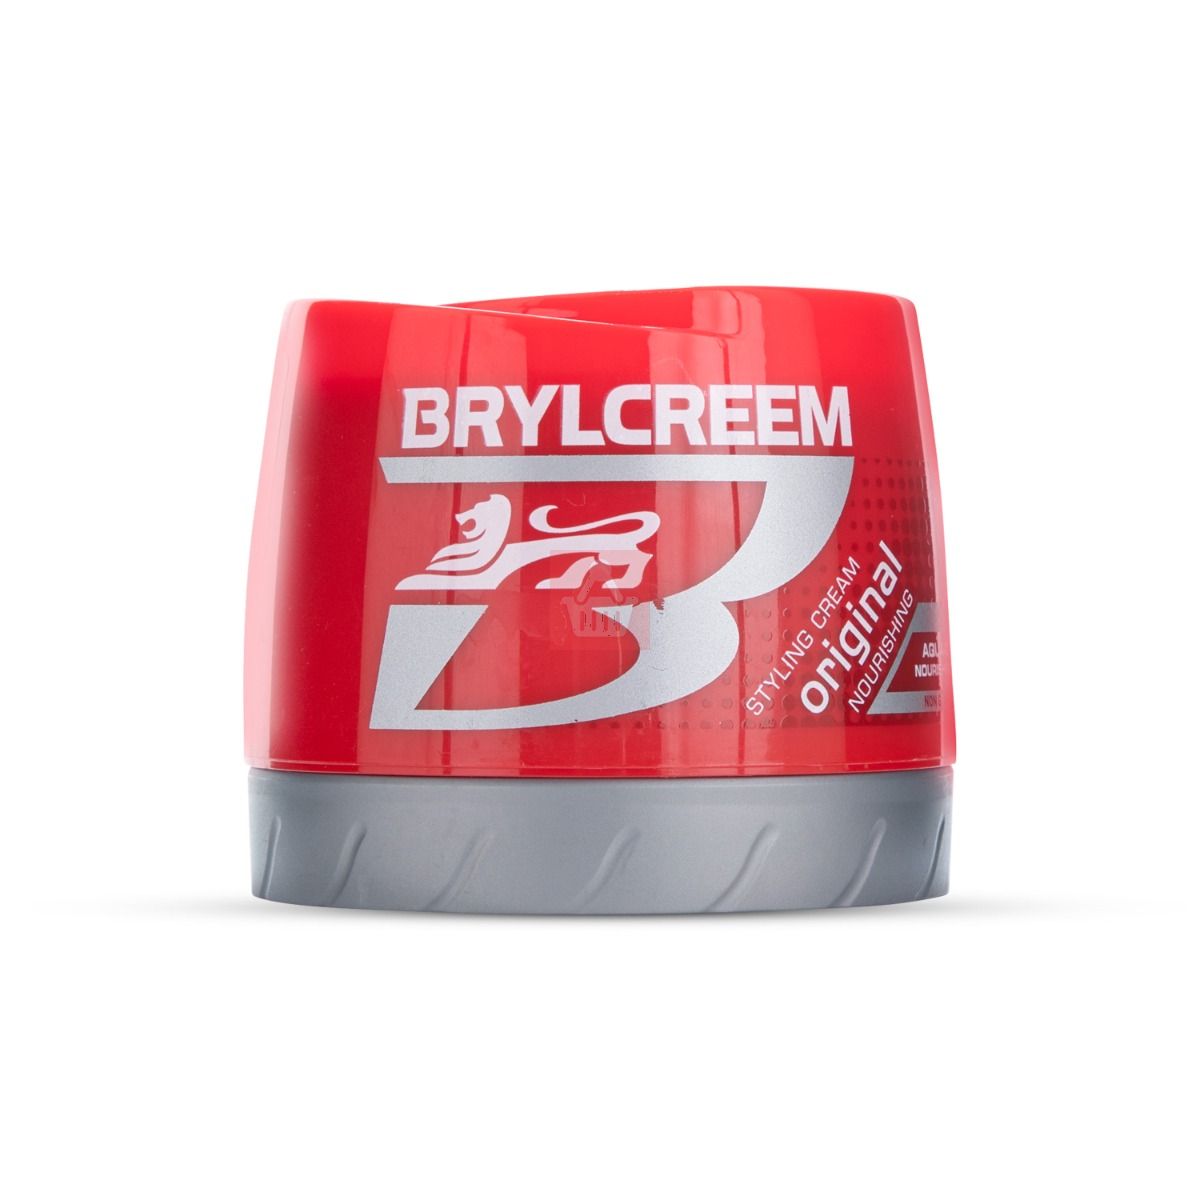 Brylcreem Original Nourishing Styling Hair Cream 125ml